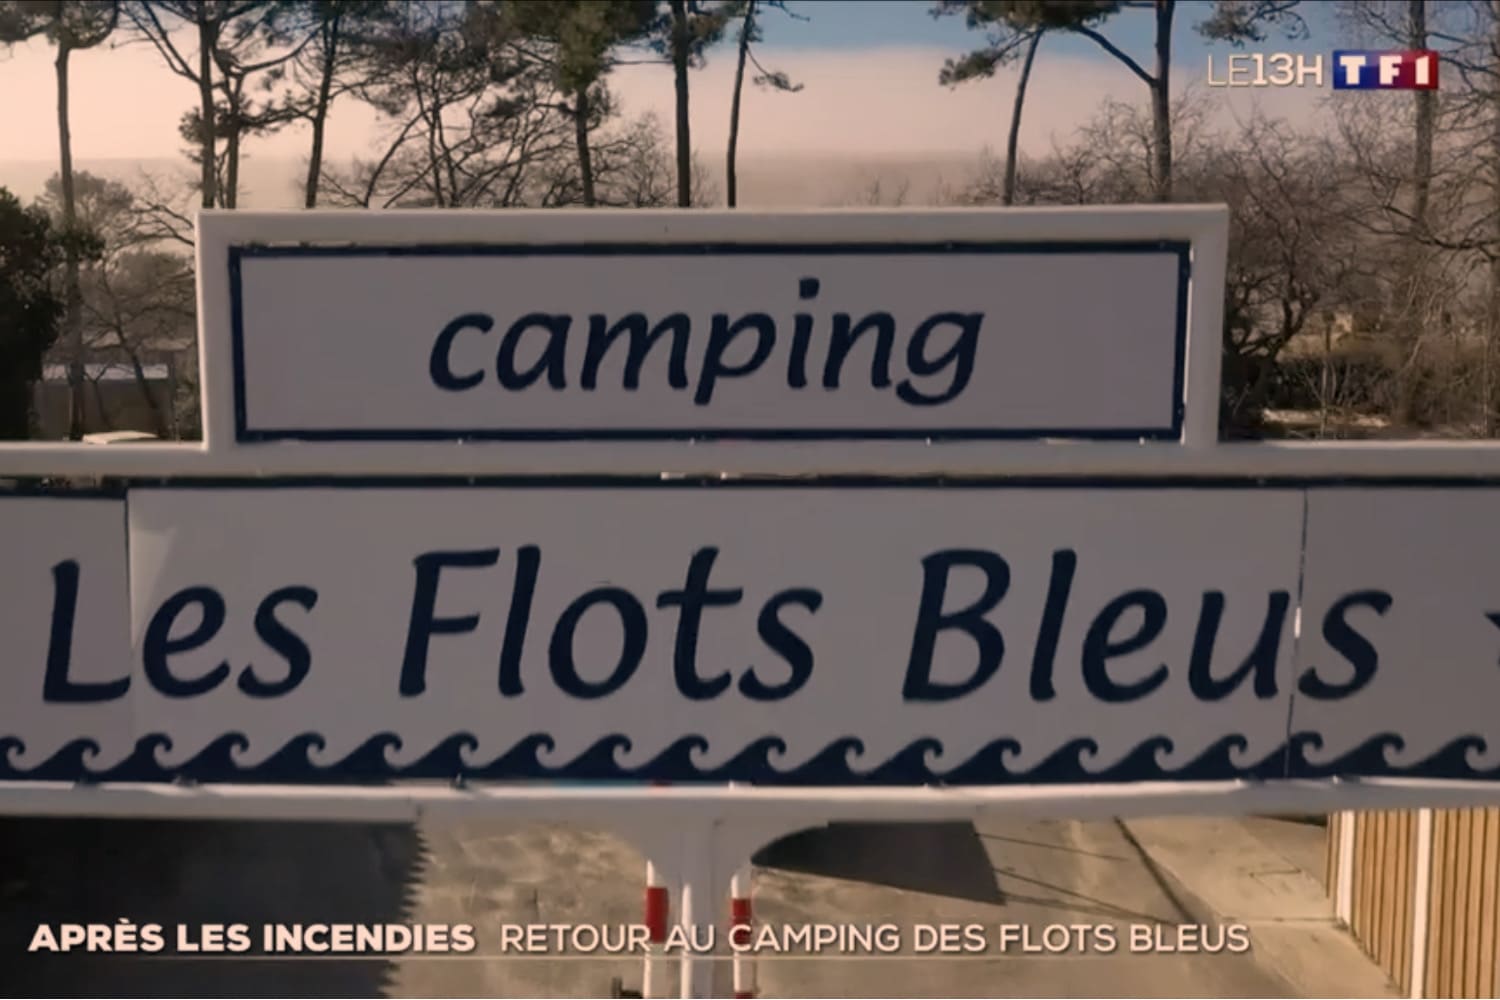 Le Camping ⛺️ des Flots bleus rouvre ses portes le 3 avril 2023 après les incendies de l’été dernier